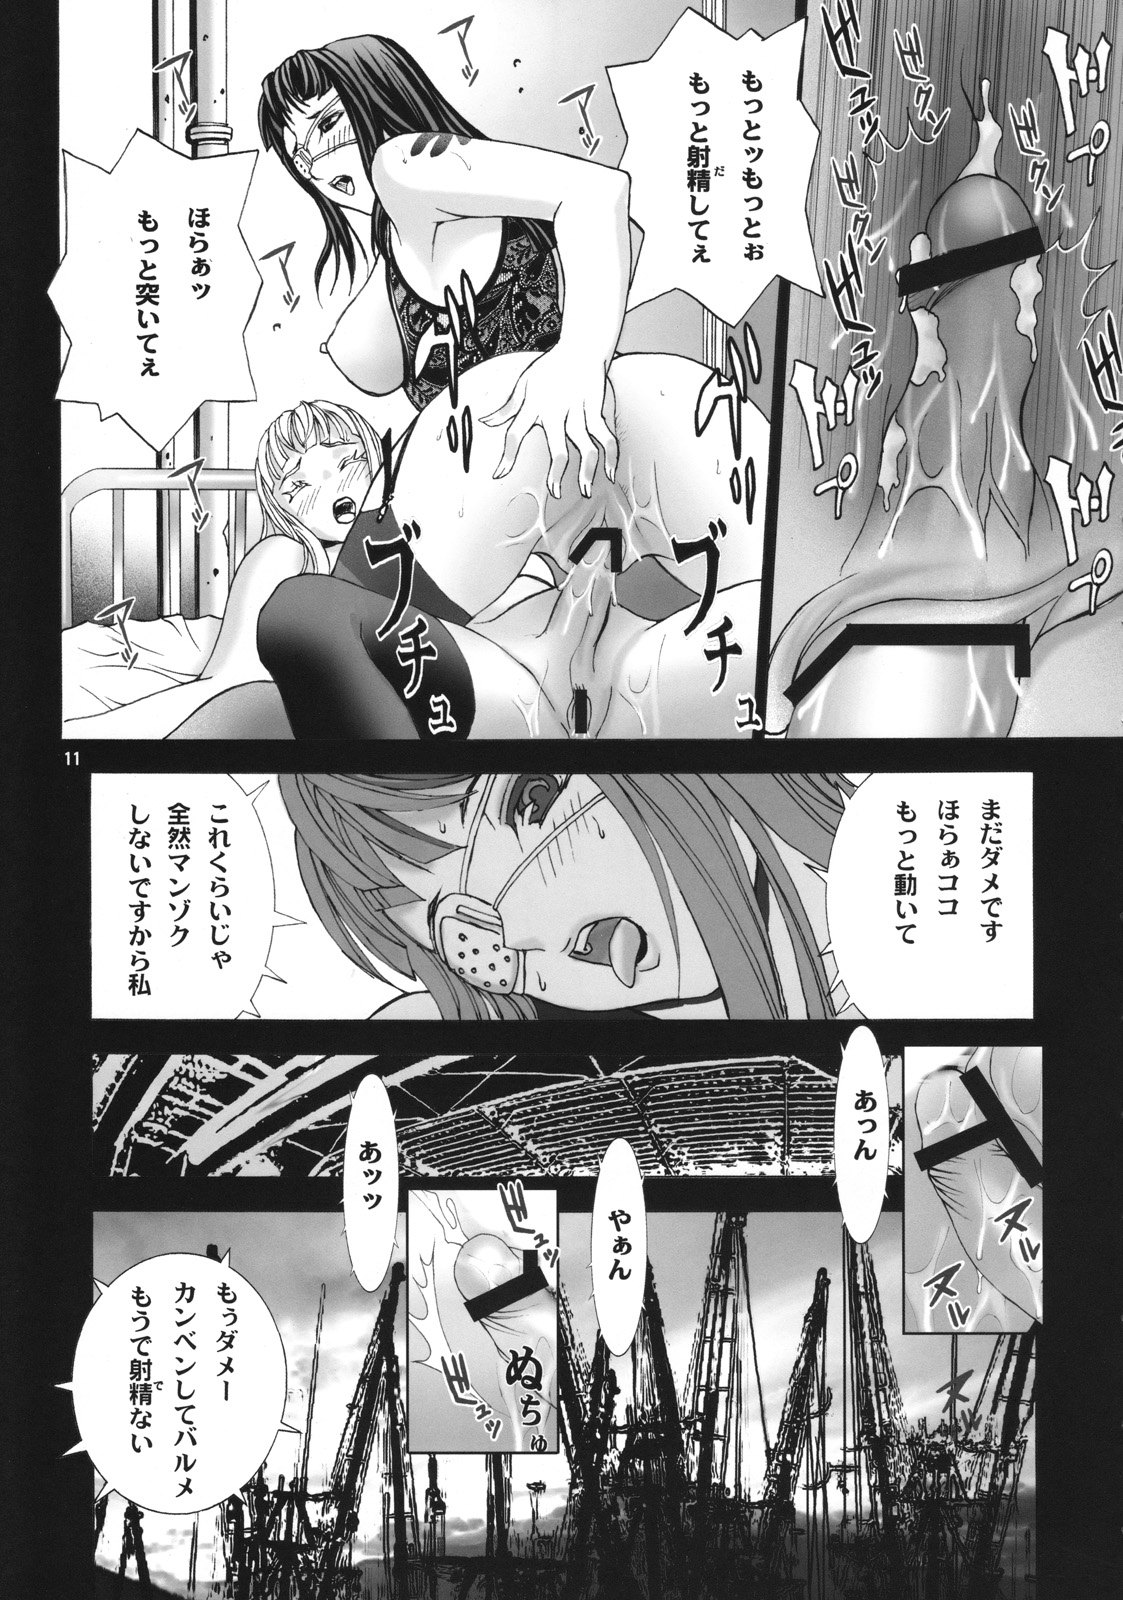 (COMIC1☆2) [AXZ (よろず)] Angel's stroke 12 ラストサパー (ヨルムンガンド)